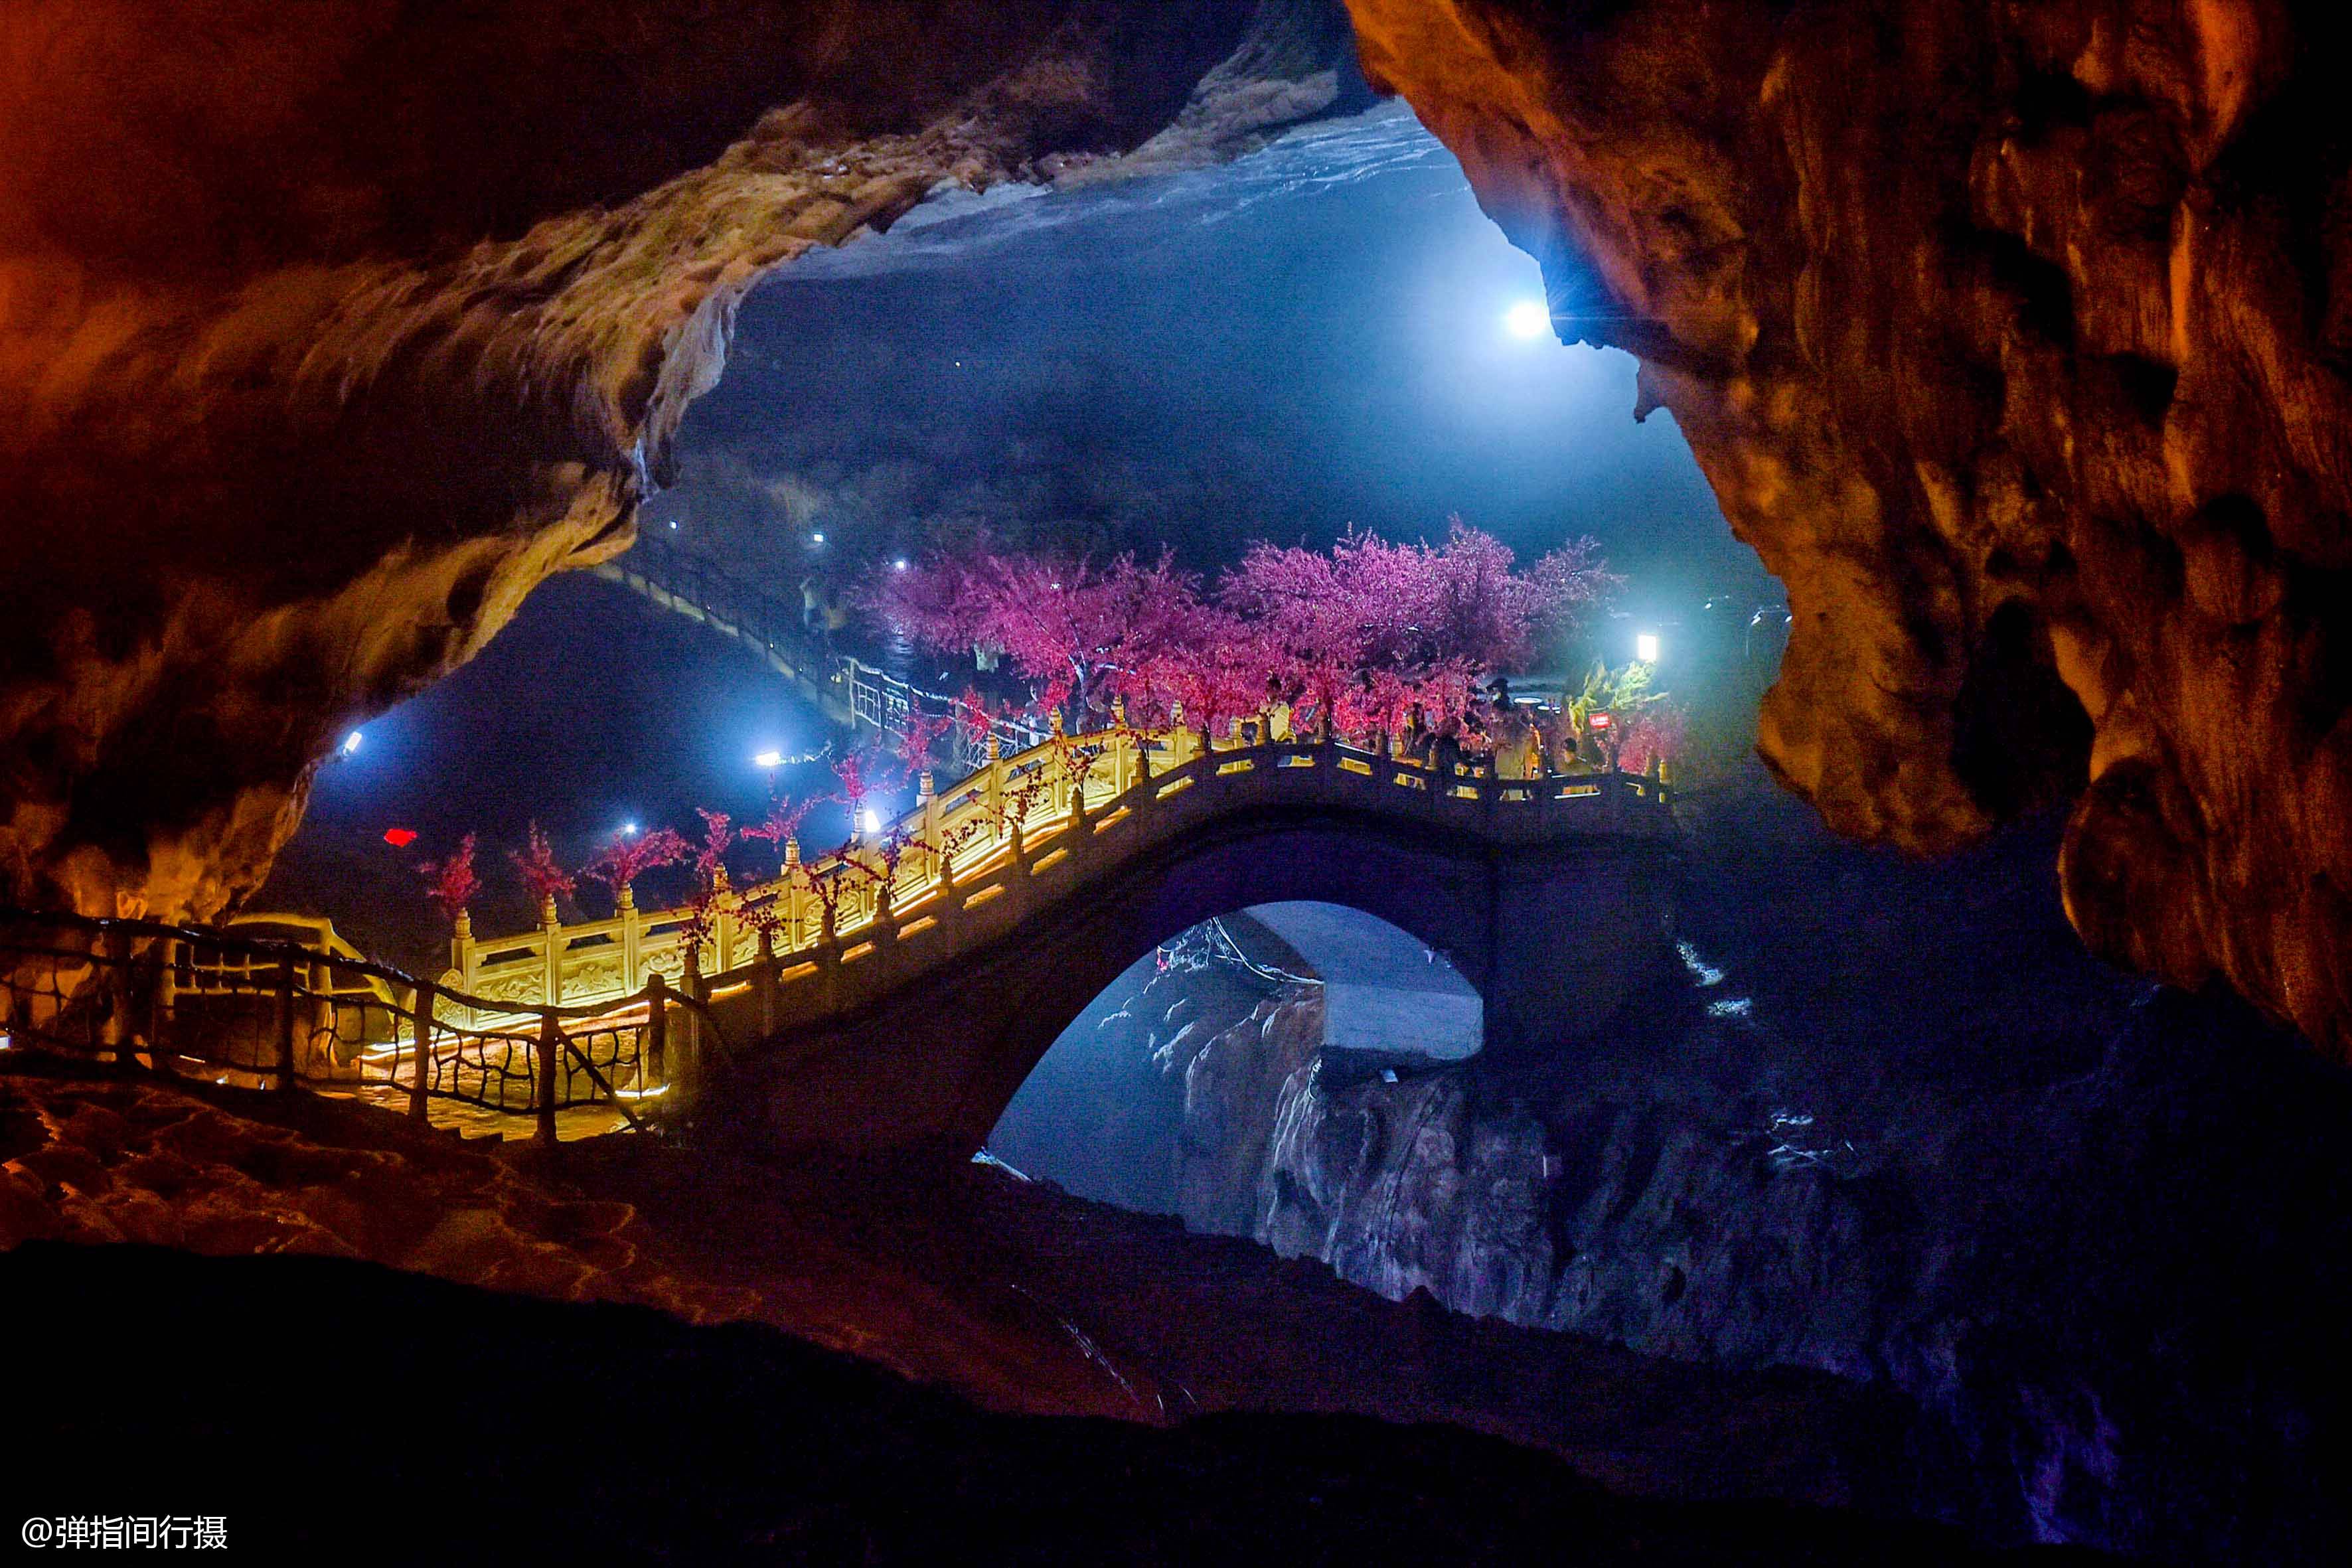 中国最美的地下河,2亿年溶洞美如仙境,常年18度成天然酒窖